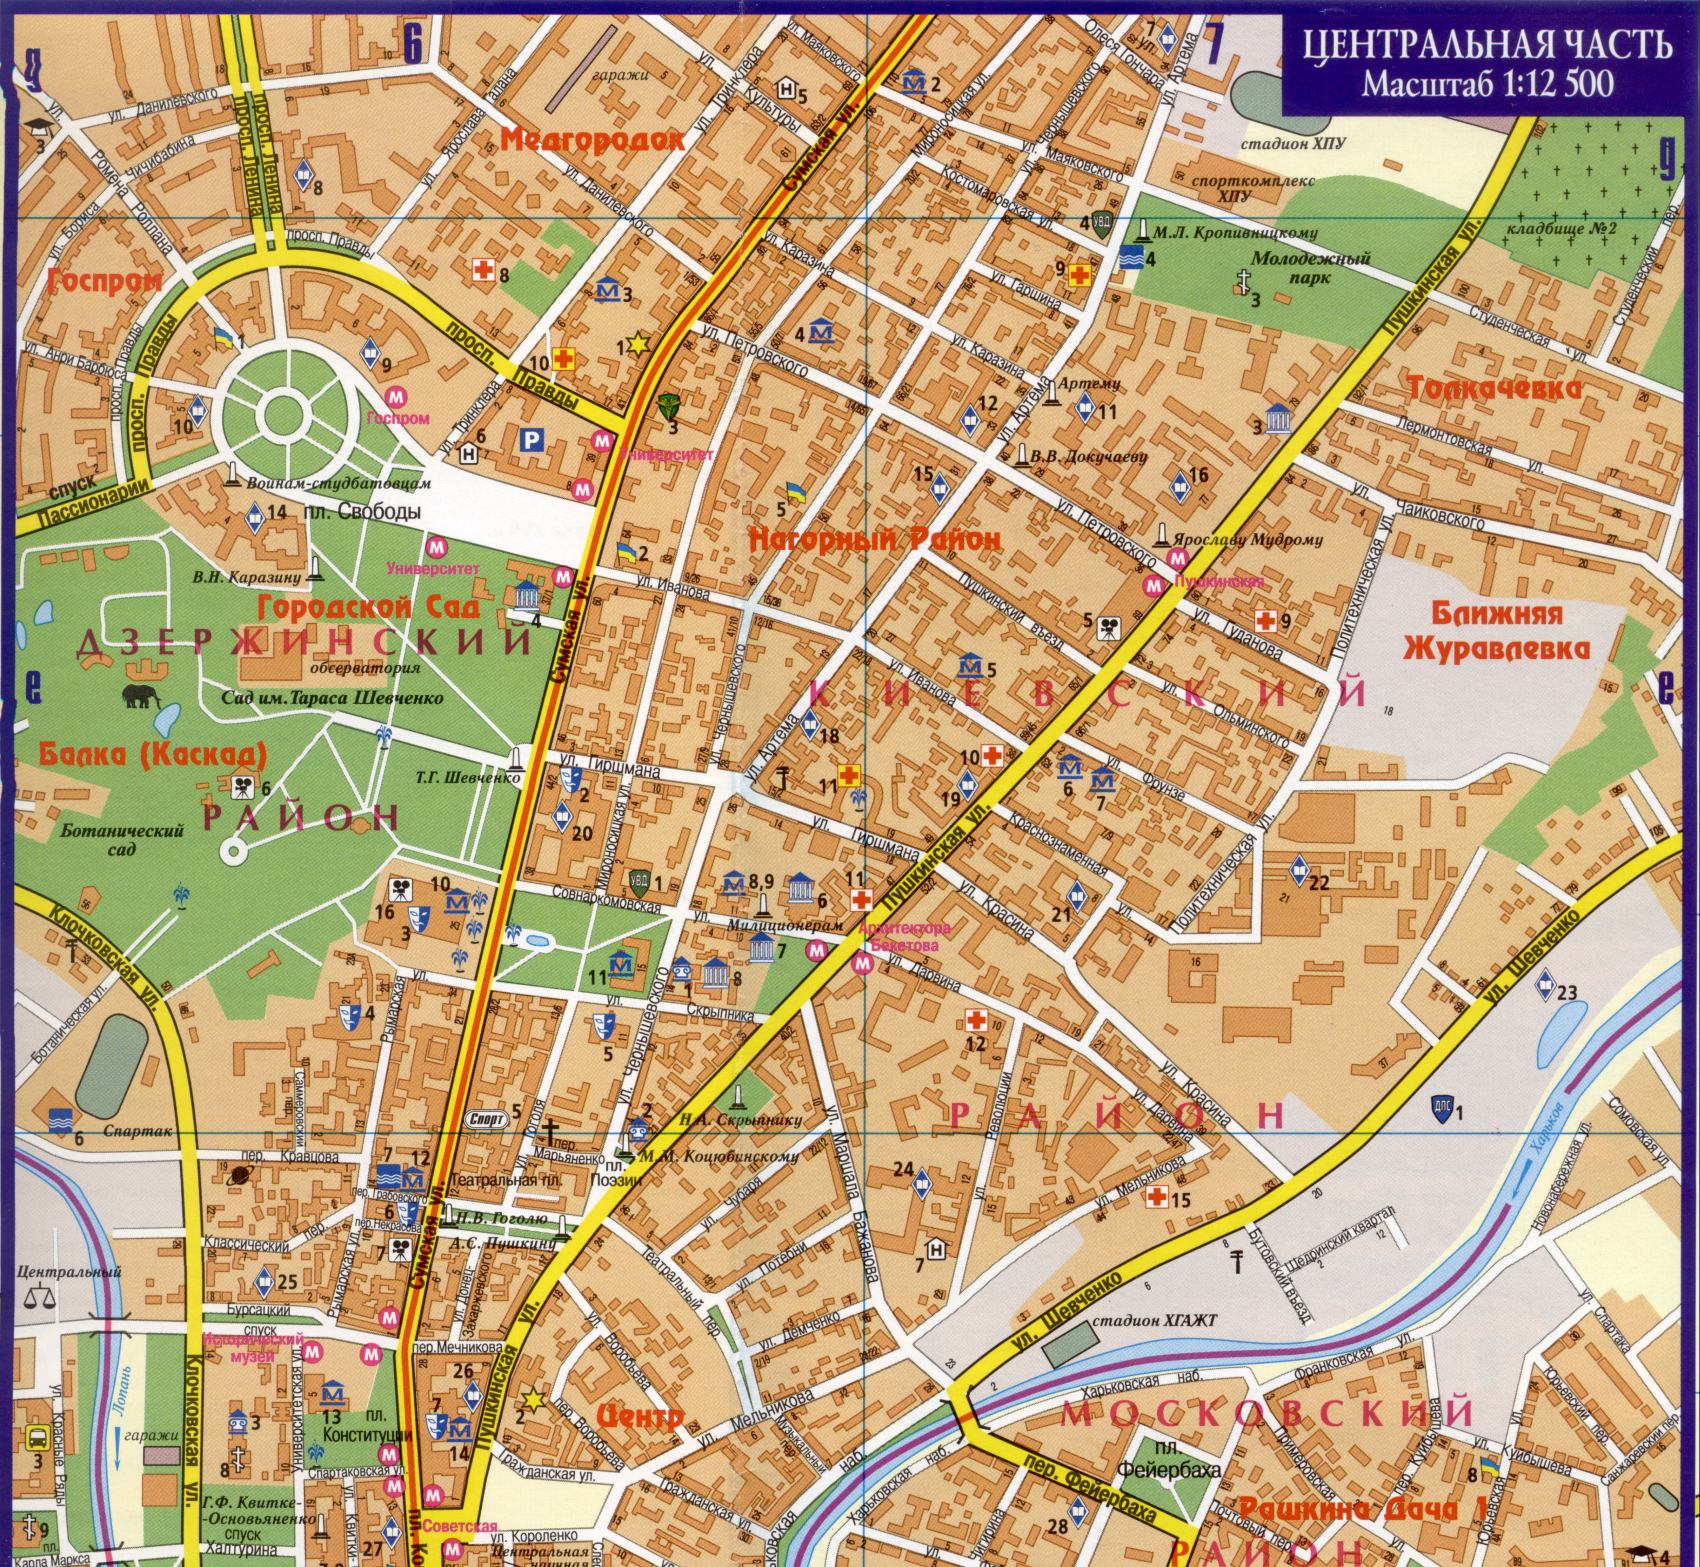 Kharkov carte - carte détaillée du centre-ville Kharkov